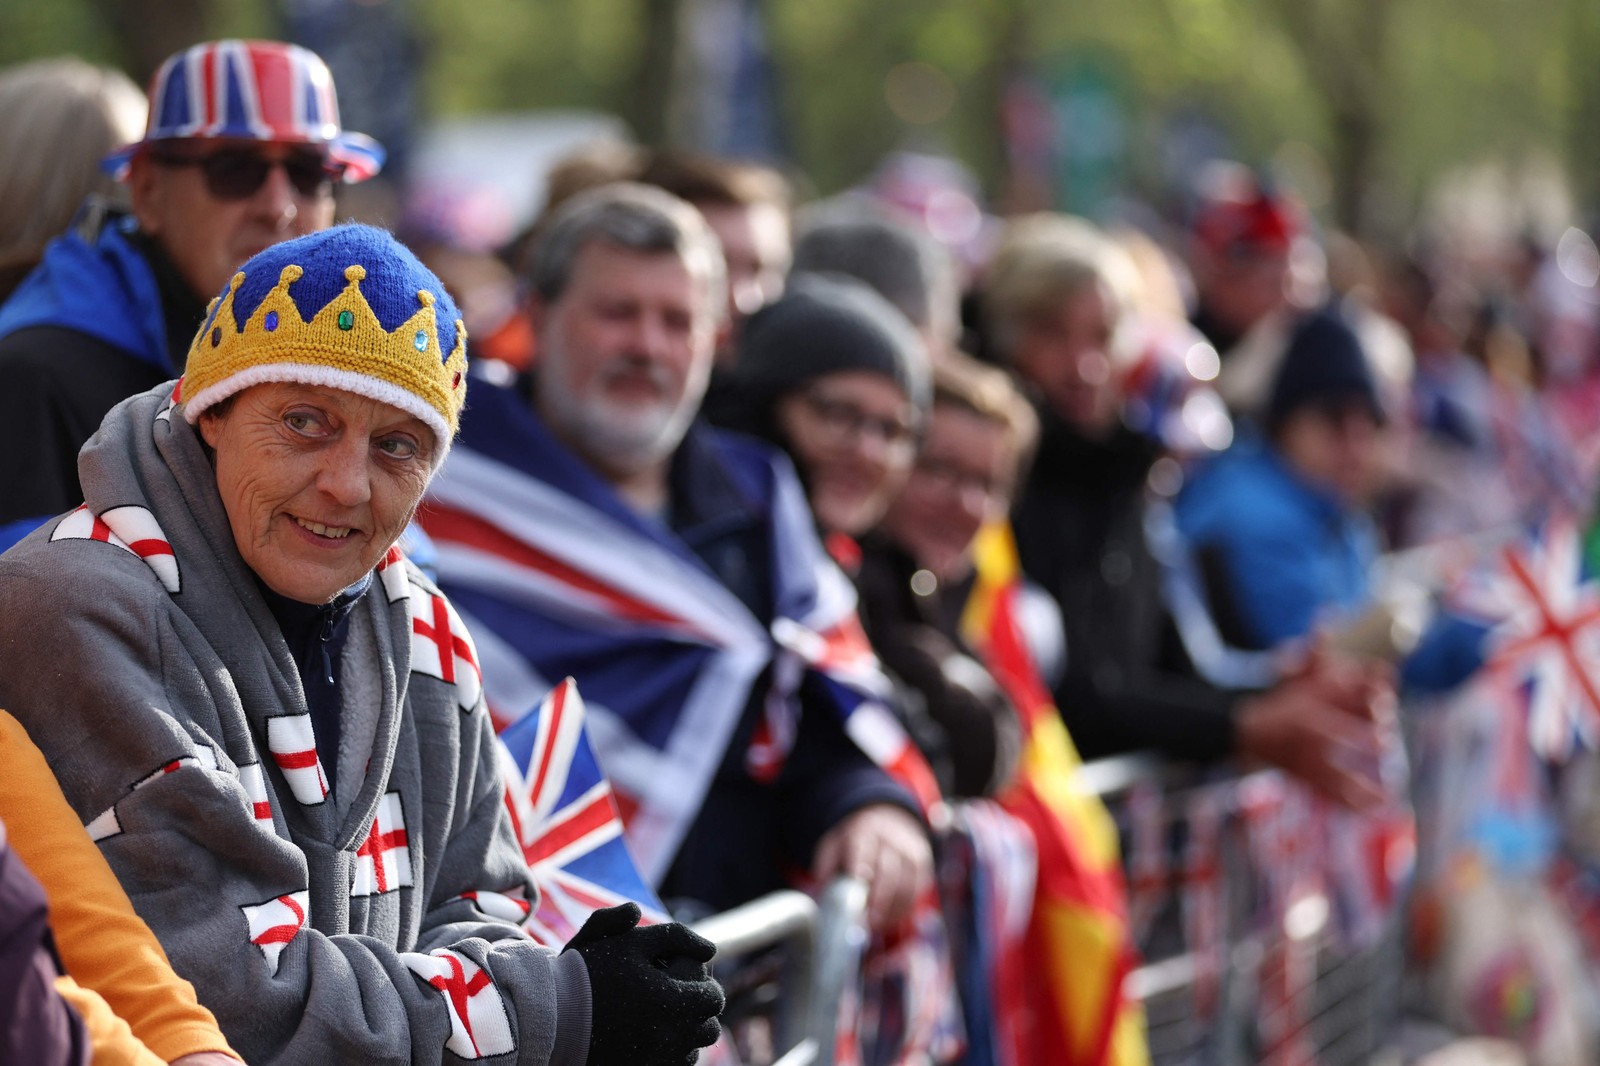 Súditos se posicionam na rota da "Procissão do Rei" para assistir à parte da coroação do rei Charles III — Foto: Richard Heathcote / AFP